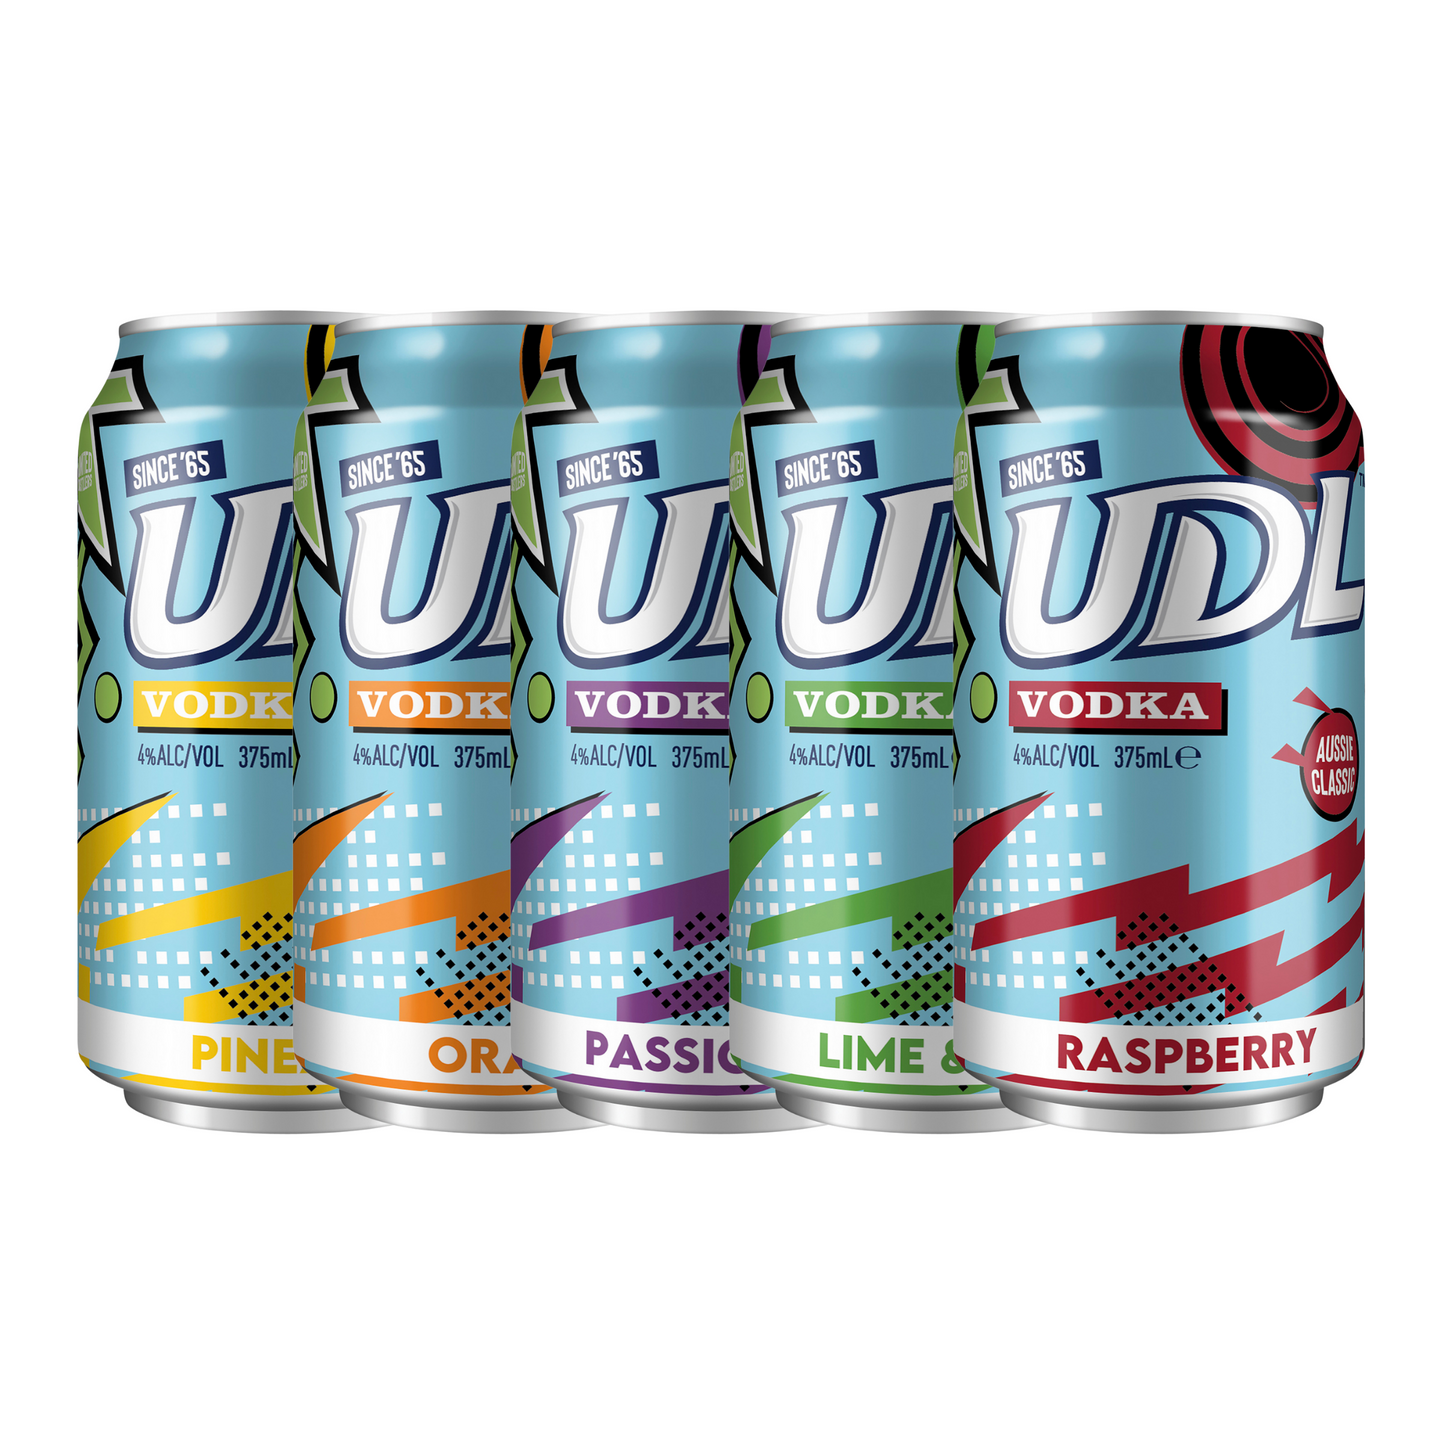 UDL Vodka 6 pack cans varieties